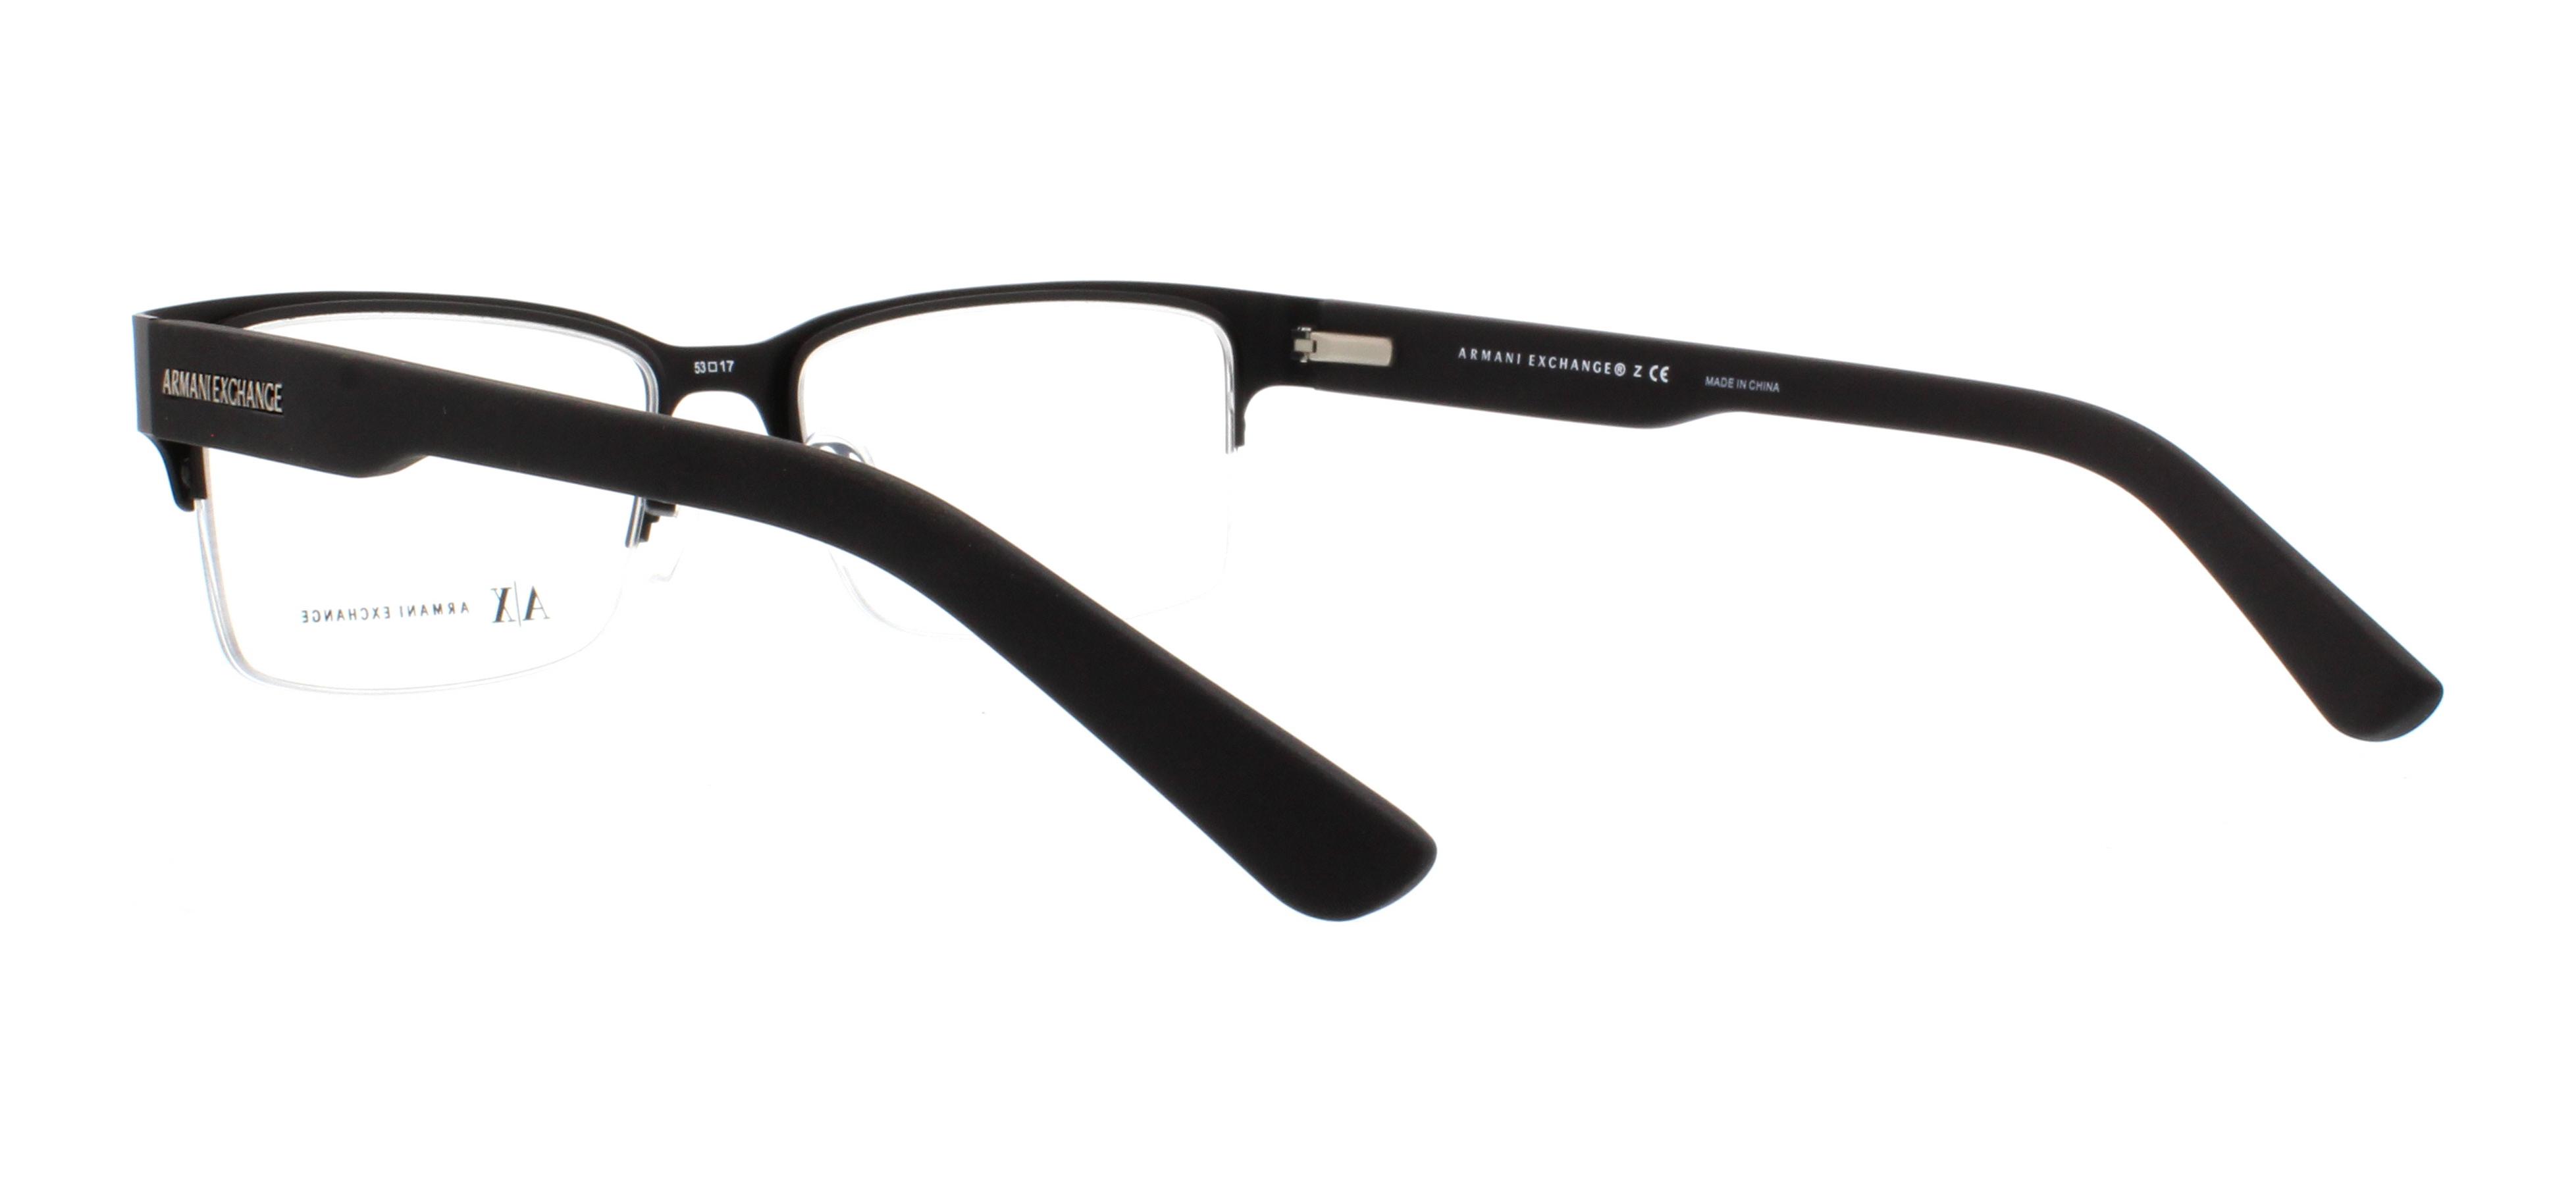 Exchange Designer Eyeglasses Armani Frames AX1014 Outlet.